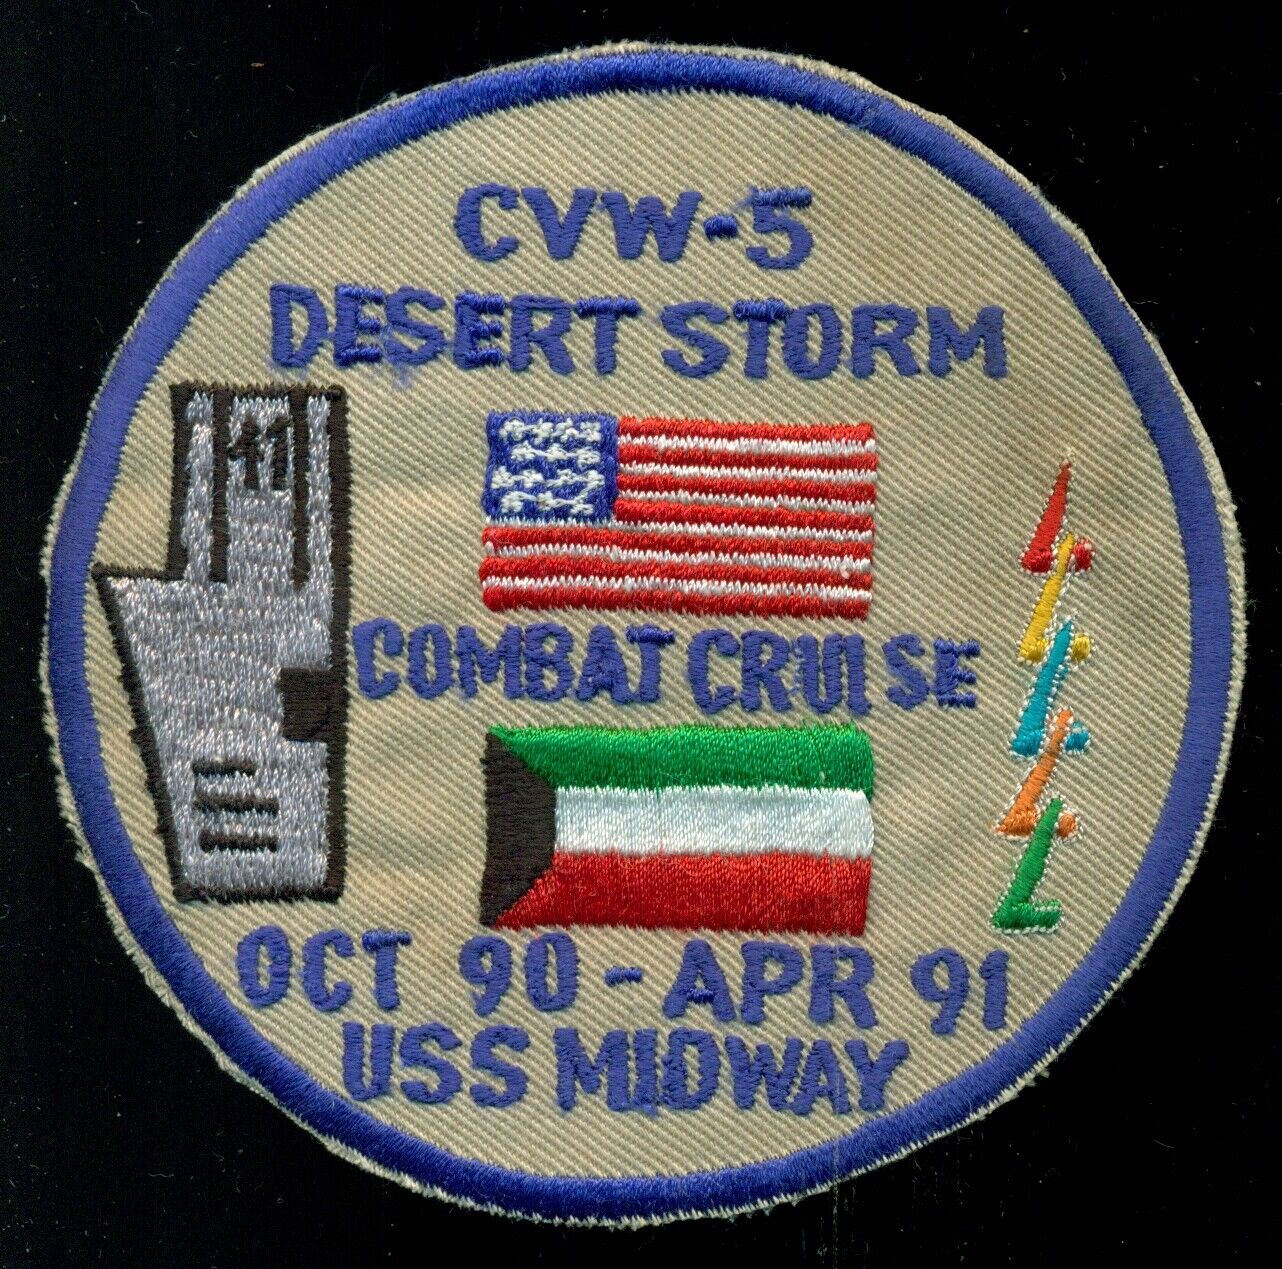 USS Midway USN CVW-5 Desert Storm CV-41 Combat Cruise Patch AA